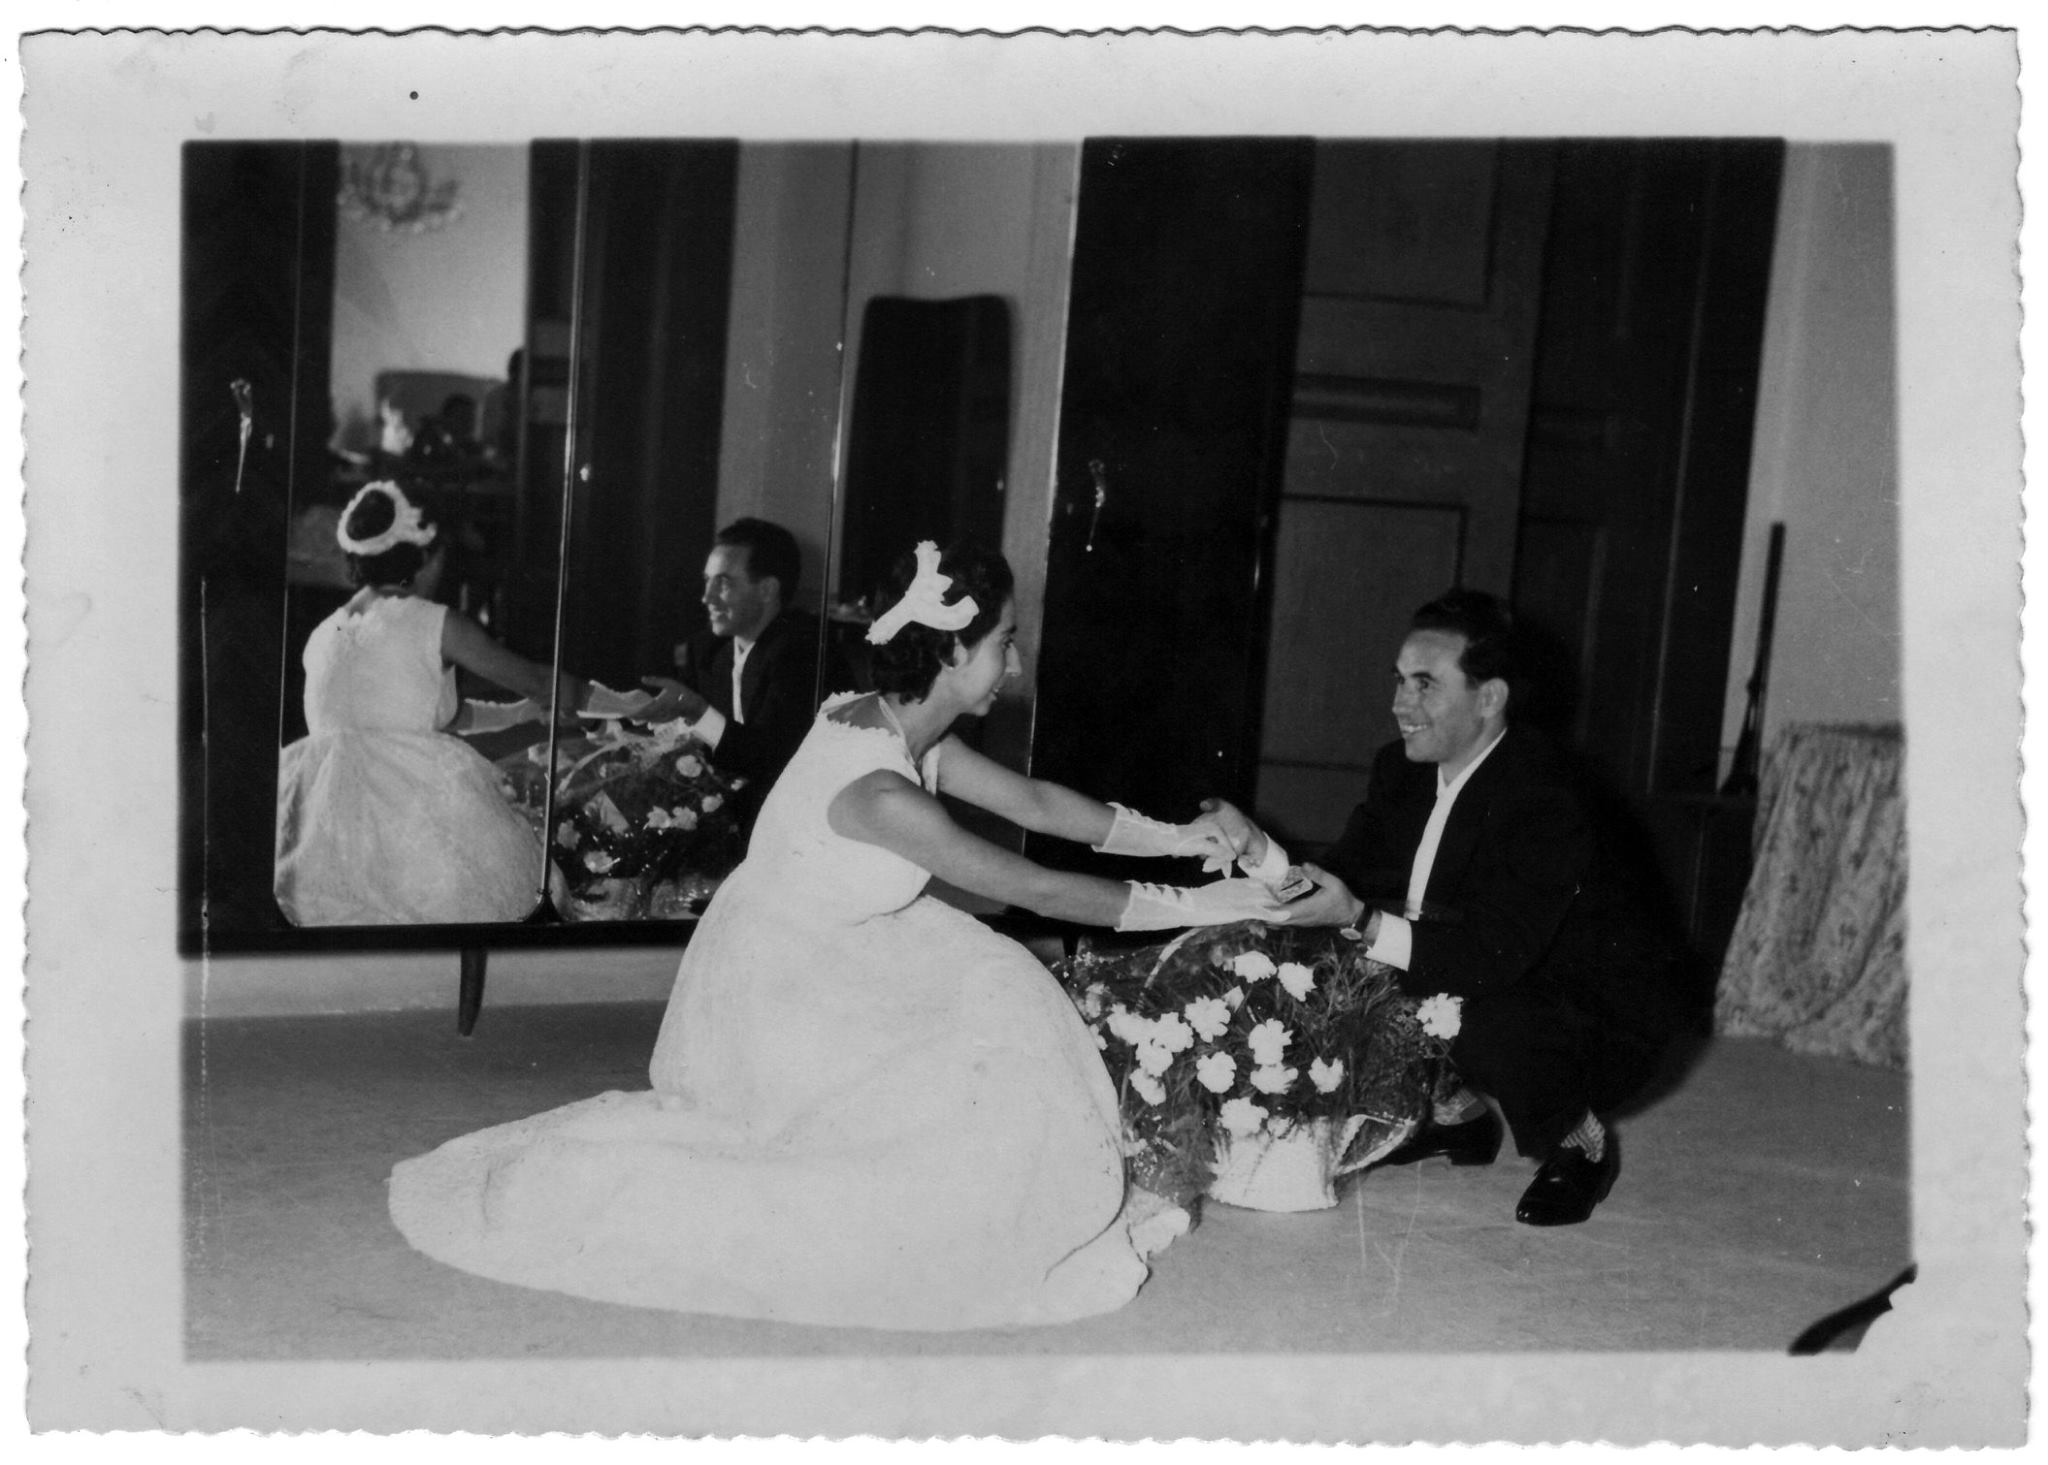 matrimoni_nellecorti - Piano-nobile-Palazzo-Ducale-Matrimonio-Prof.-Vincenzo-Palmiero-Giuseppina-Dalterio-9-Luglio-1958.jpg